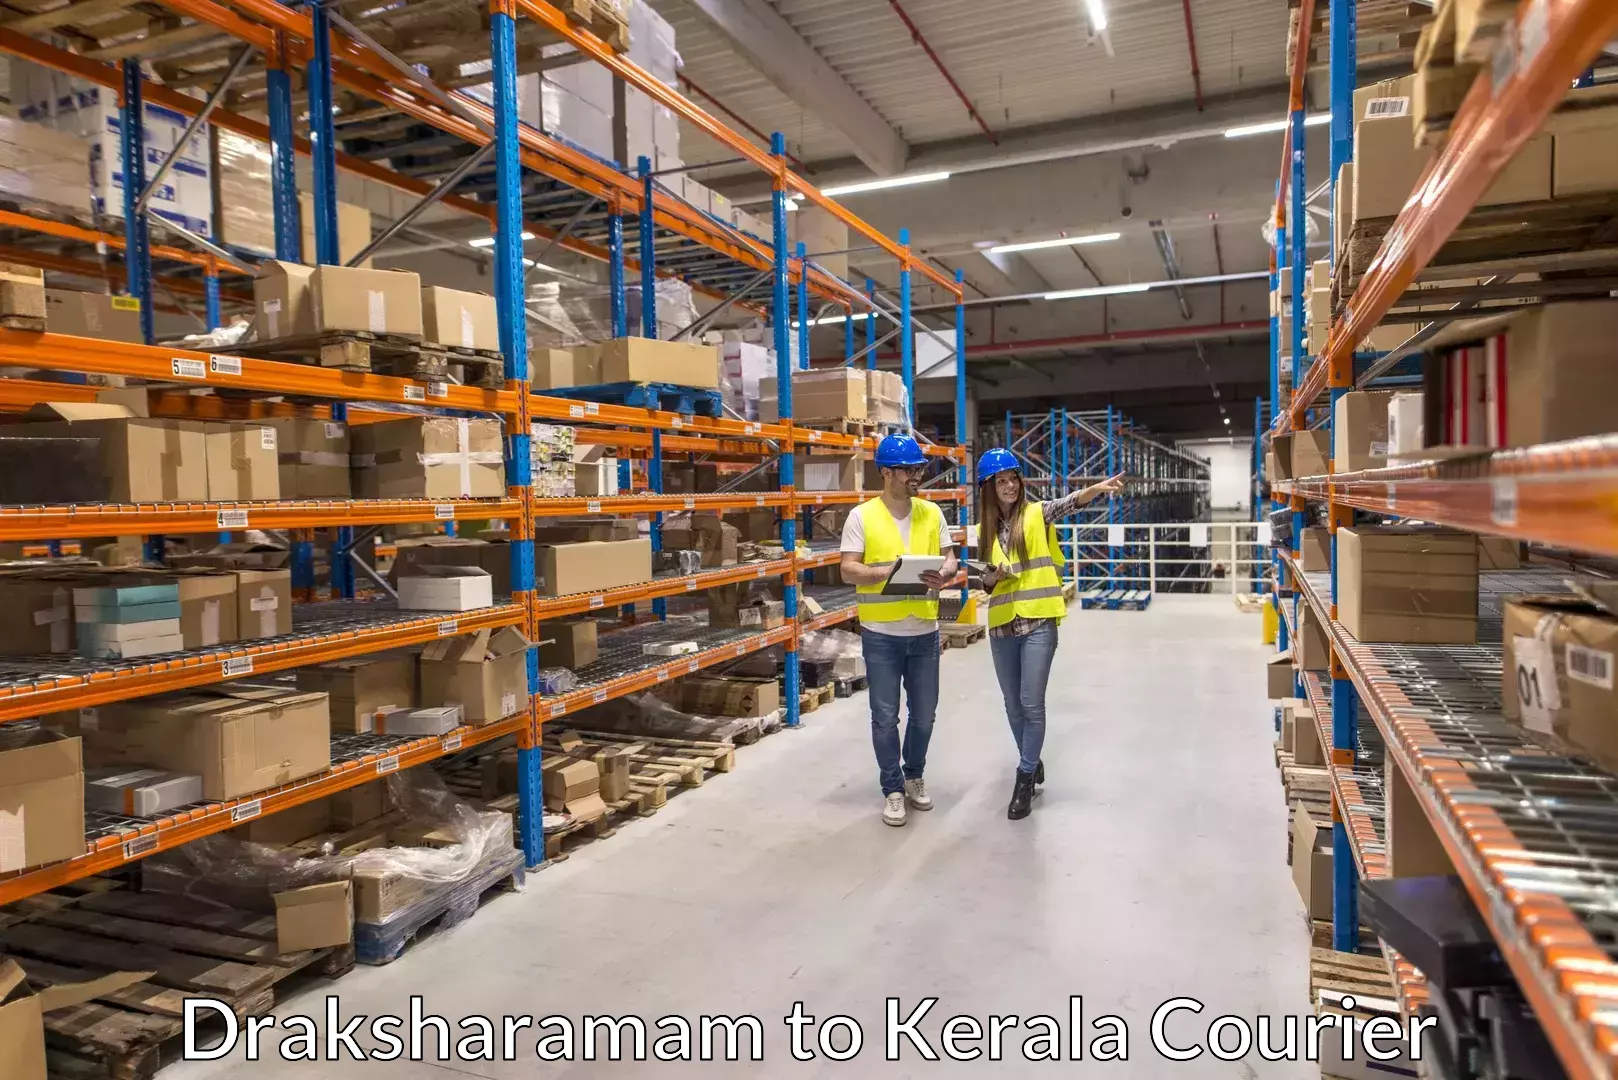 Expert goods movers in Draksharamam to Kochi